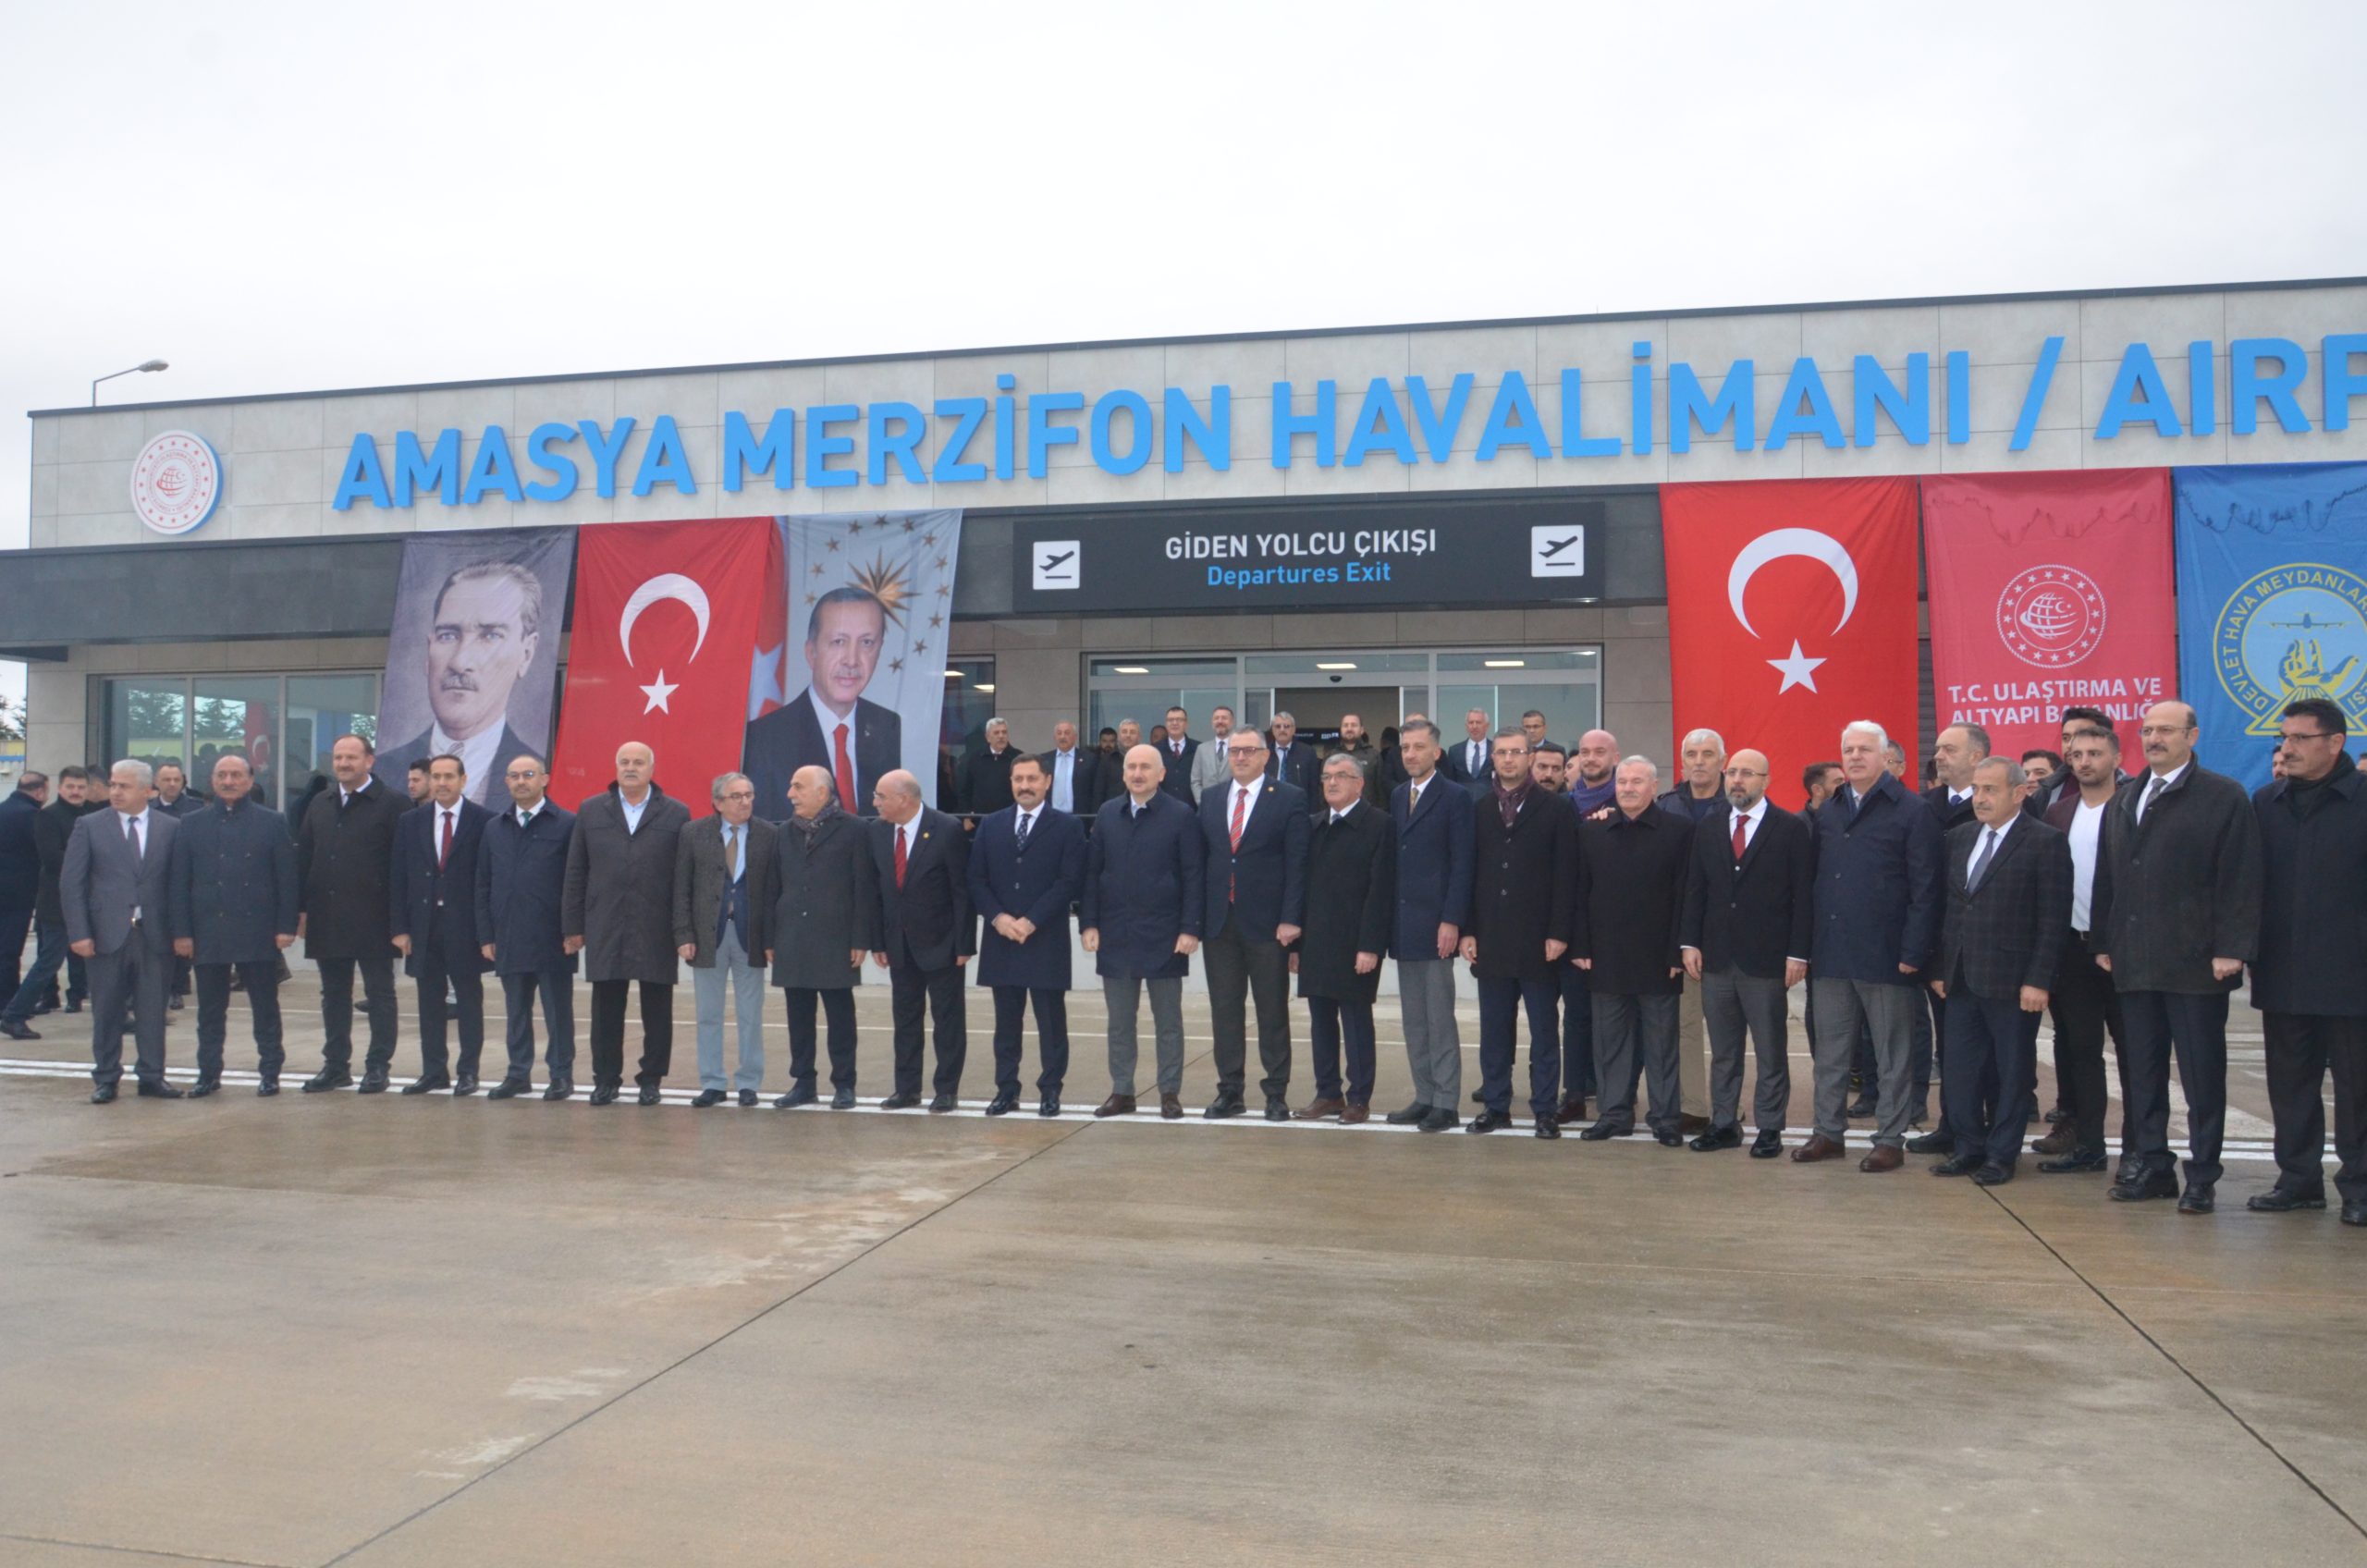 Ulaştırma Bakanı Karaismailoğlu,Mezifon Havaalanı Yeni Terminal Binasını Açılışını Gerçekleştirdi